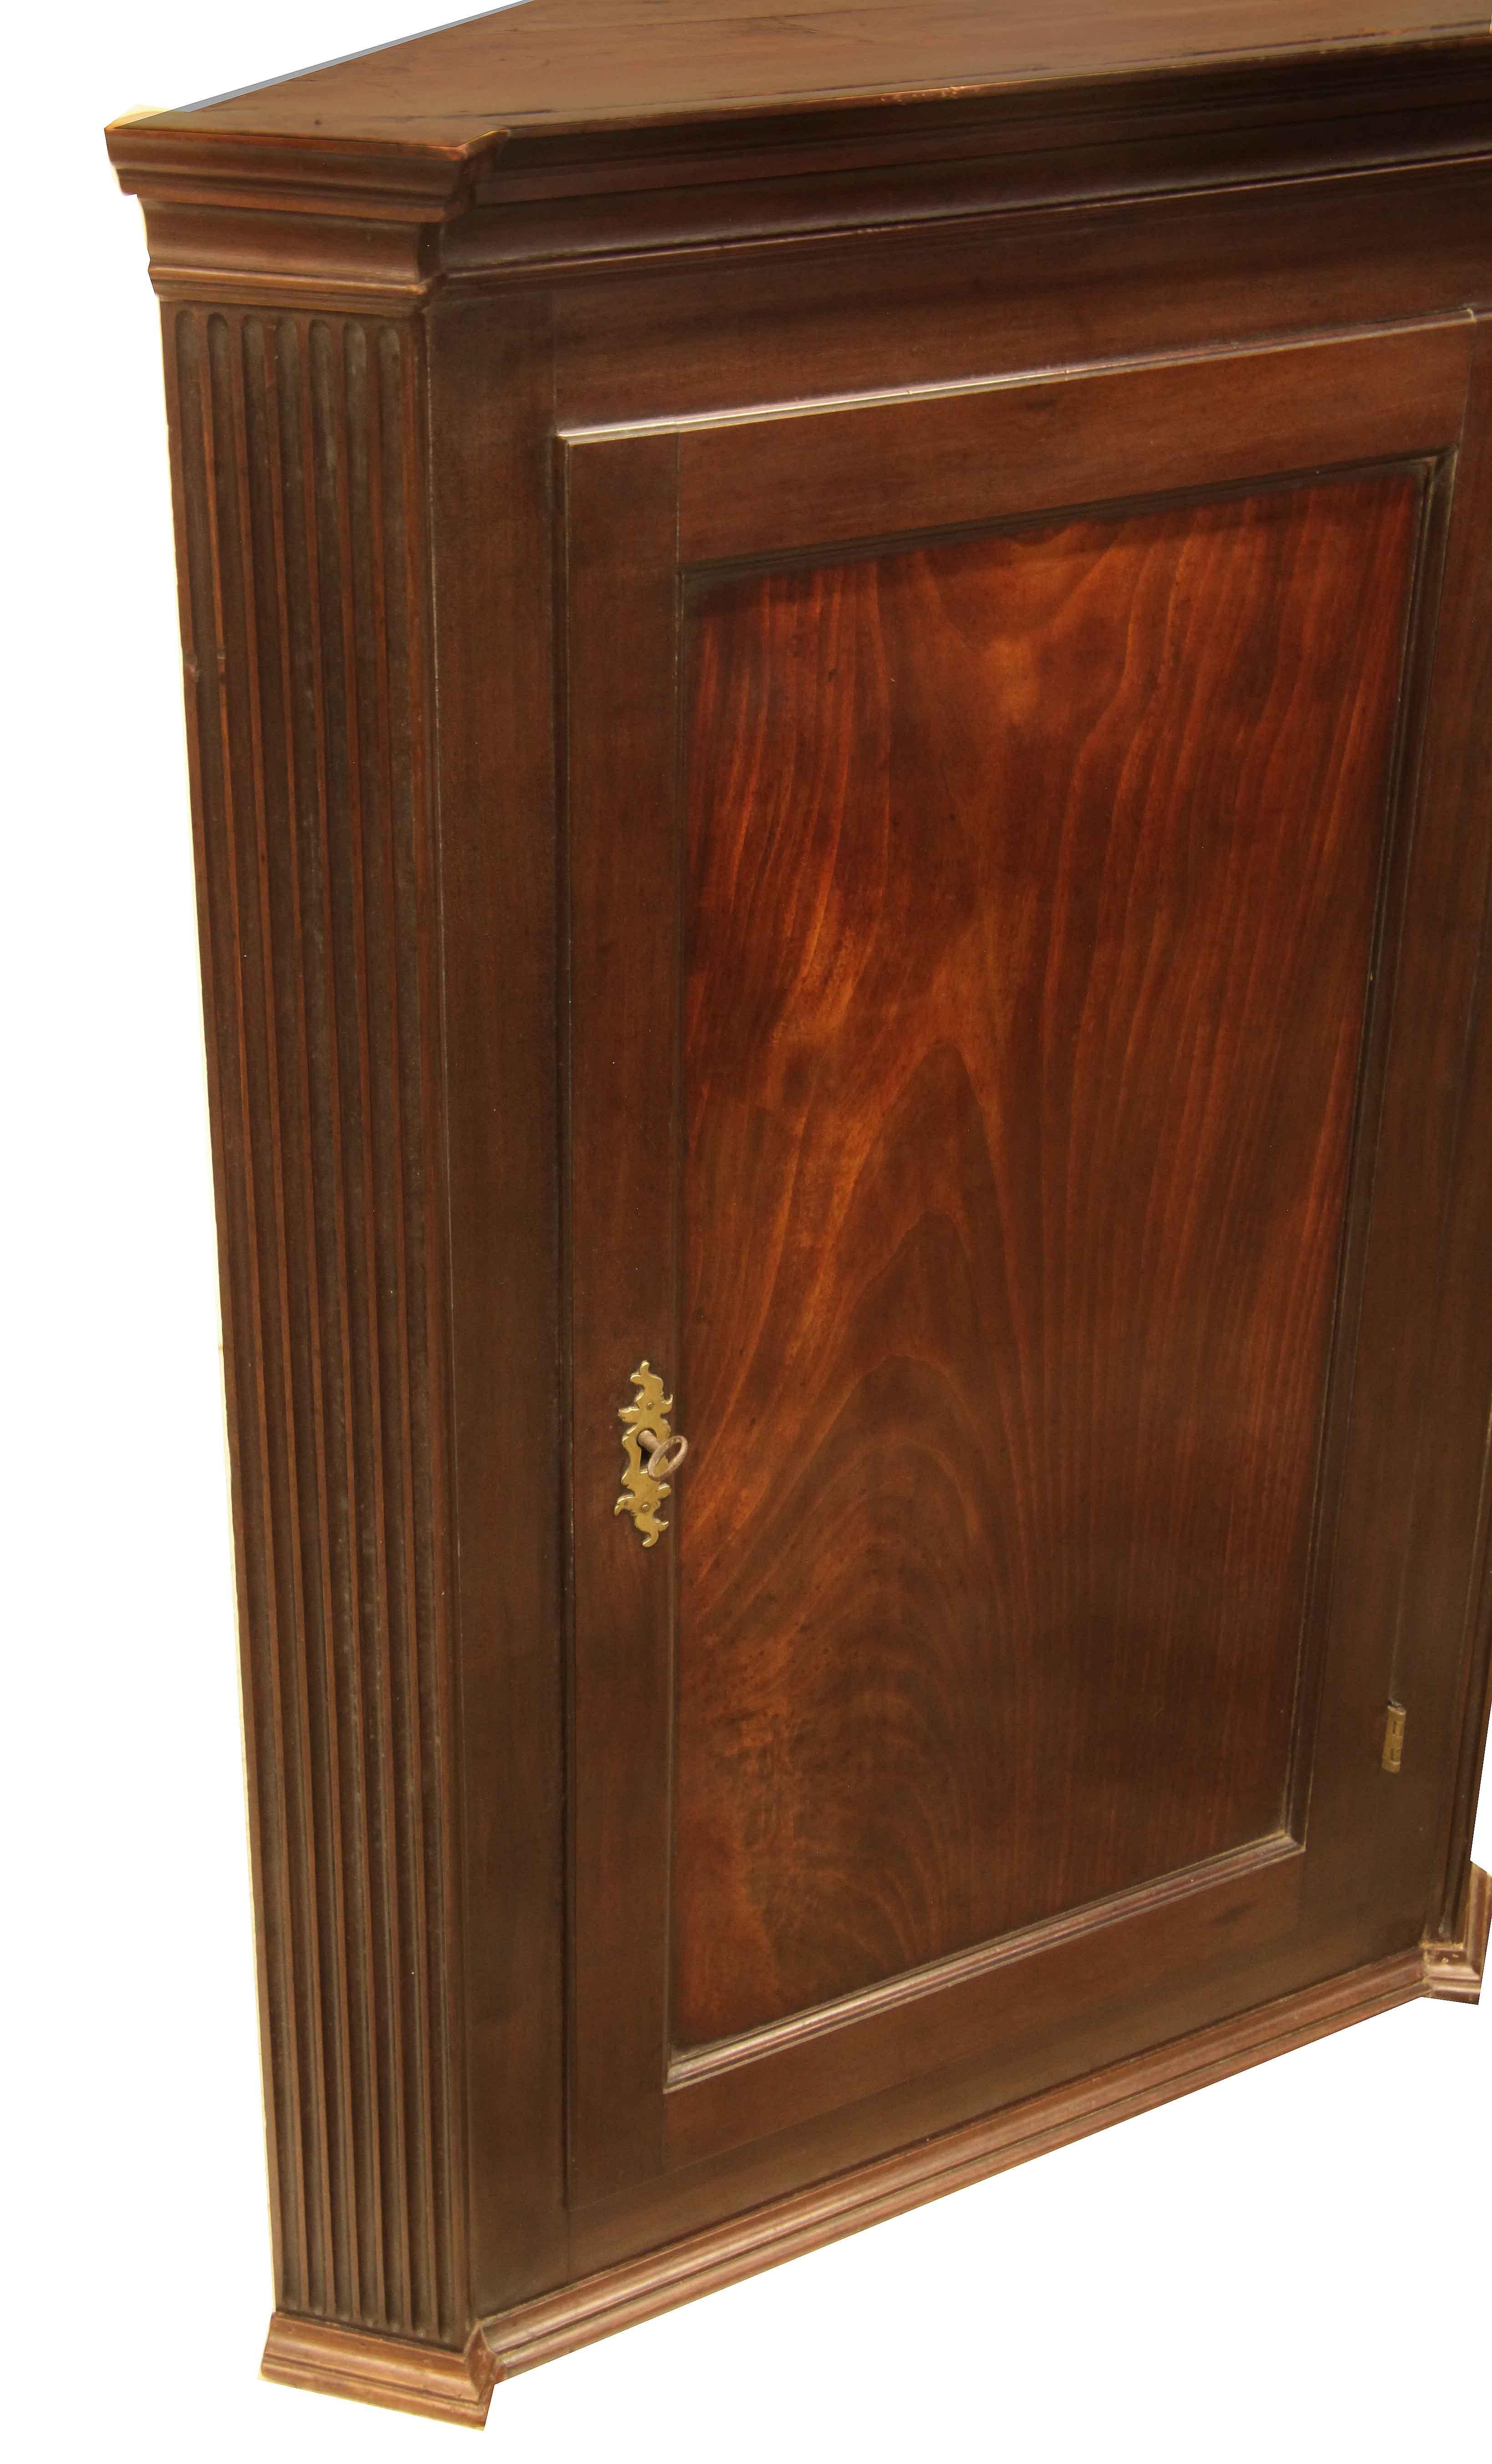 Eckhängeschrank George III,  mit Voutengesims; die Rücksprünge sind ausgeblockt und geriffelt, die Tür hat eine schöne gemaserte Mahagoni-Paneele mit ausgezeichneter Patina und Farbe, original funktionierendes Schloss und Schlüssel.  Im Inneren